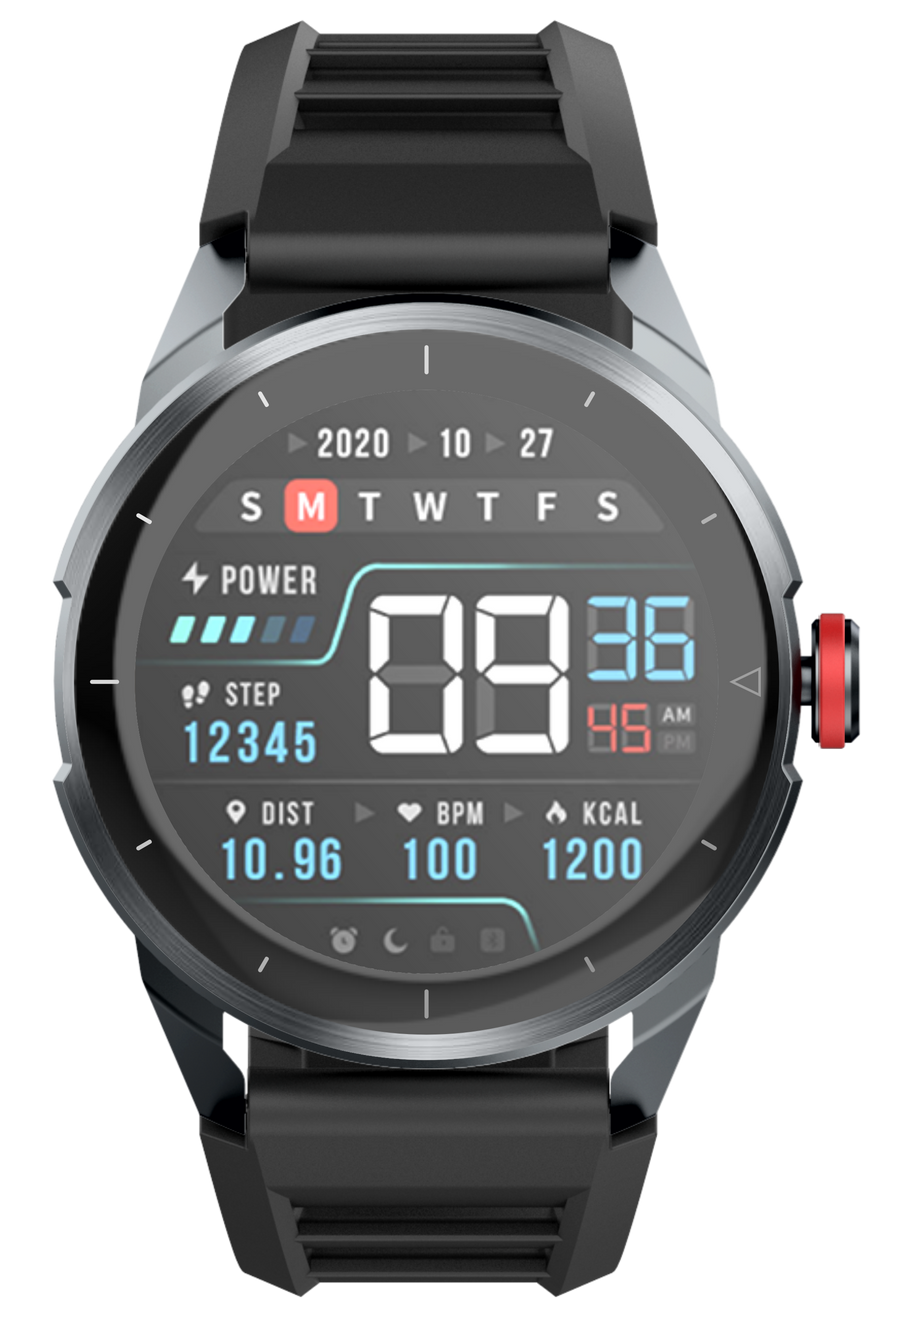 TYME TSWC19BK-01 Smart Watch